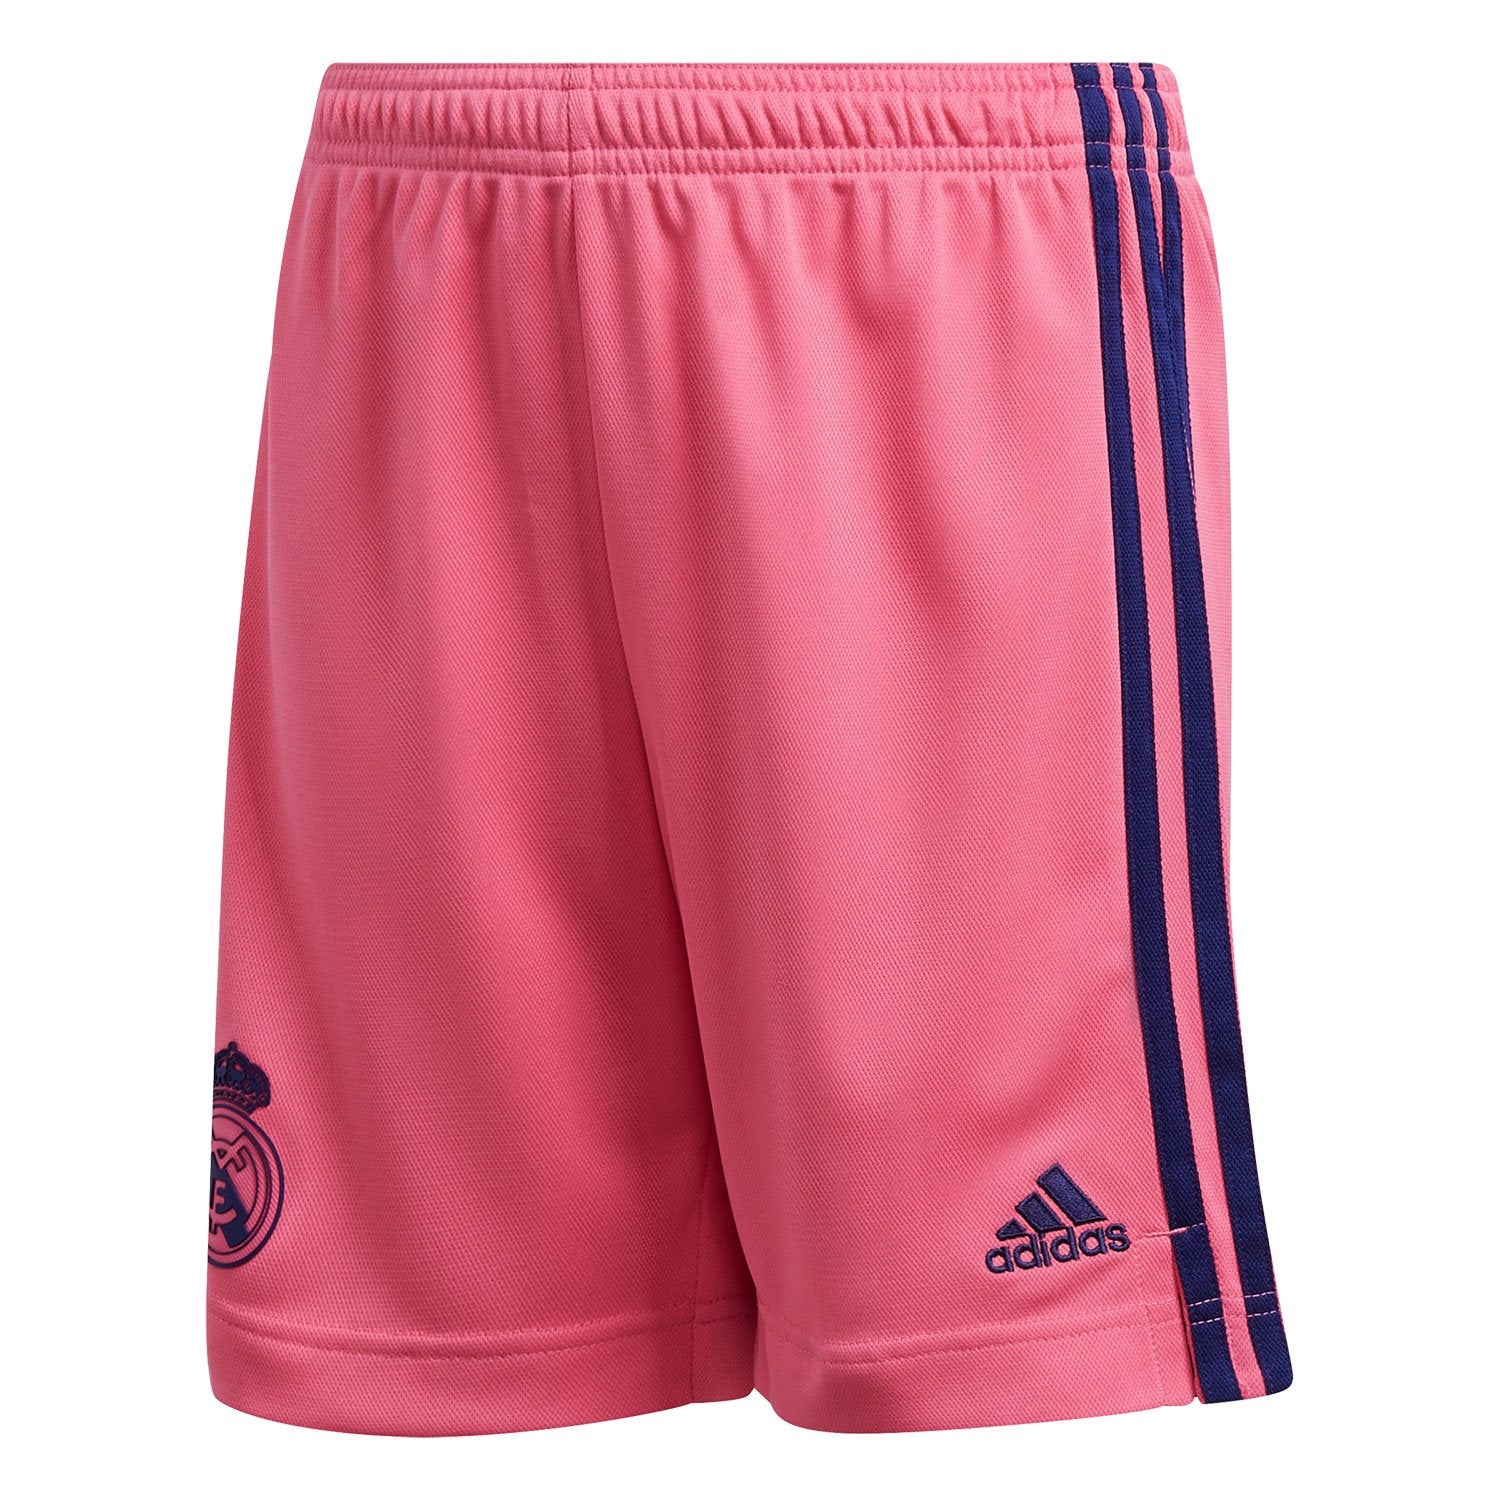 Real Madrid cortos para hombre 20-21 rosa - Real Madrid CF US Store